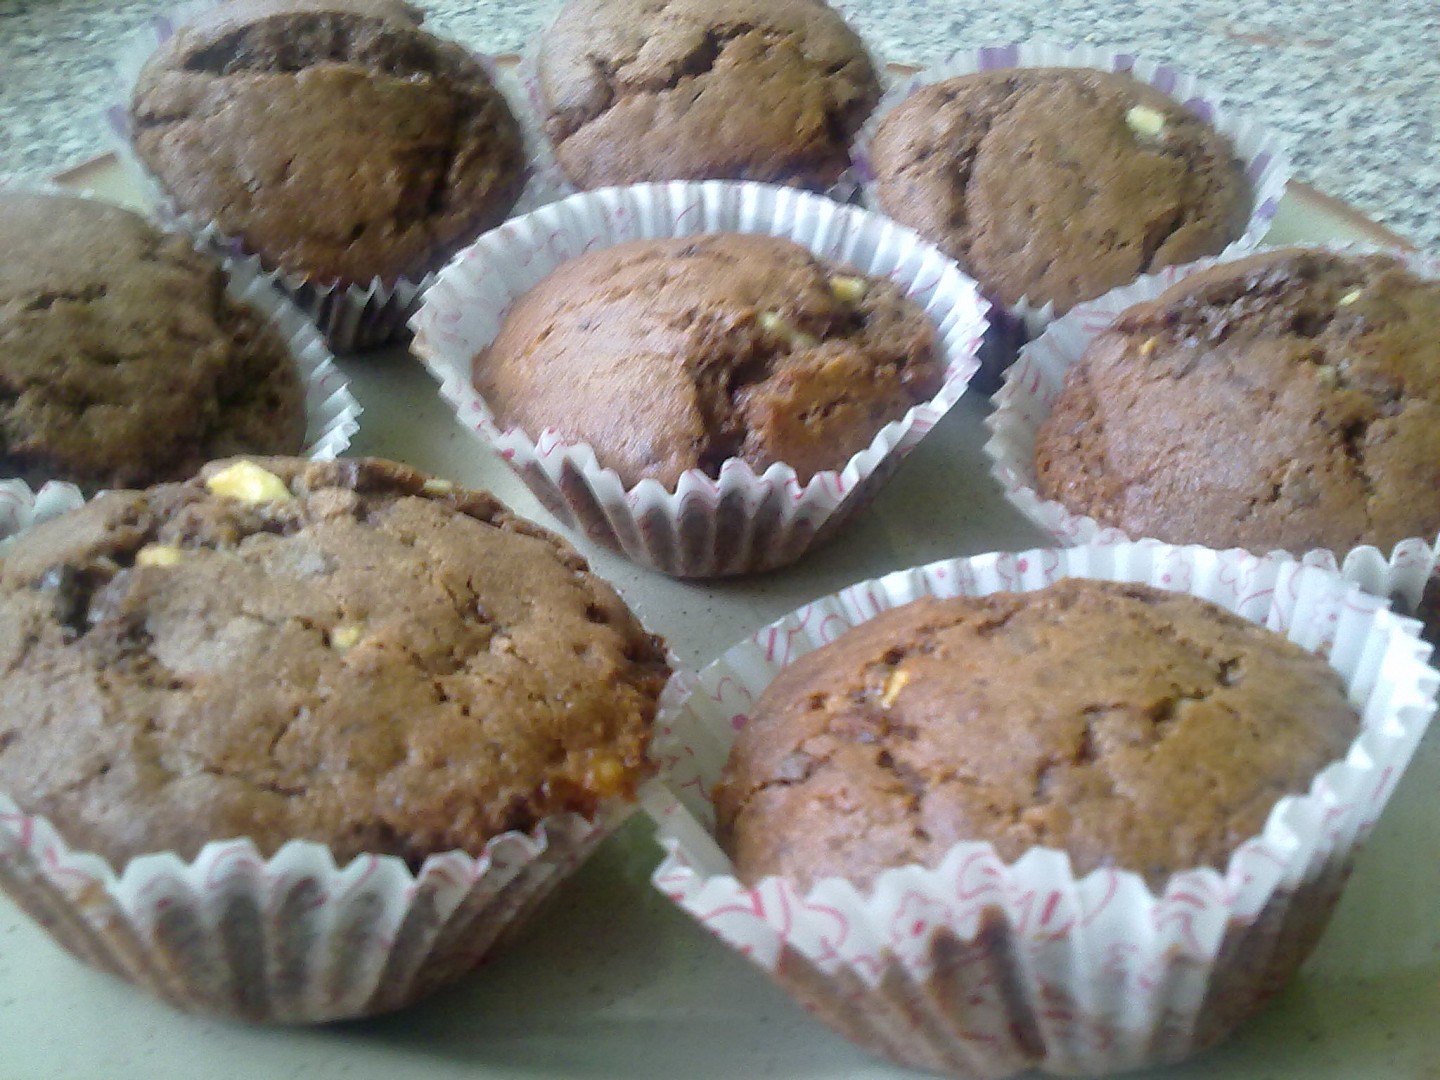 Muffiny ze tří druhů čokolády